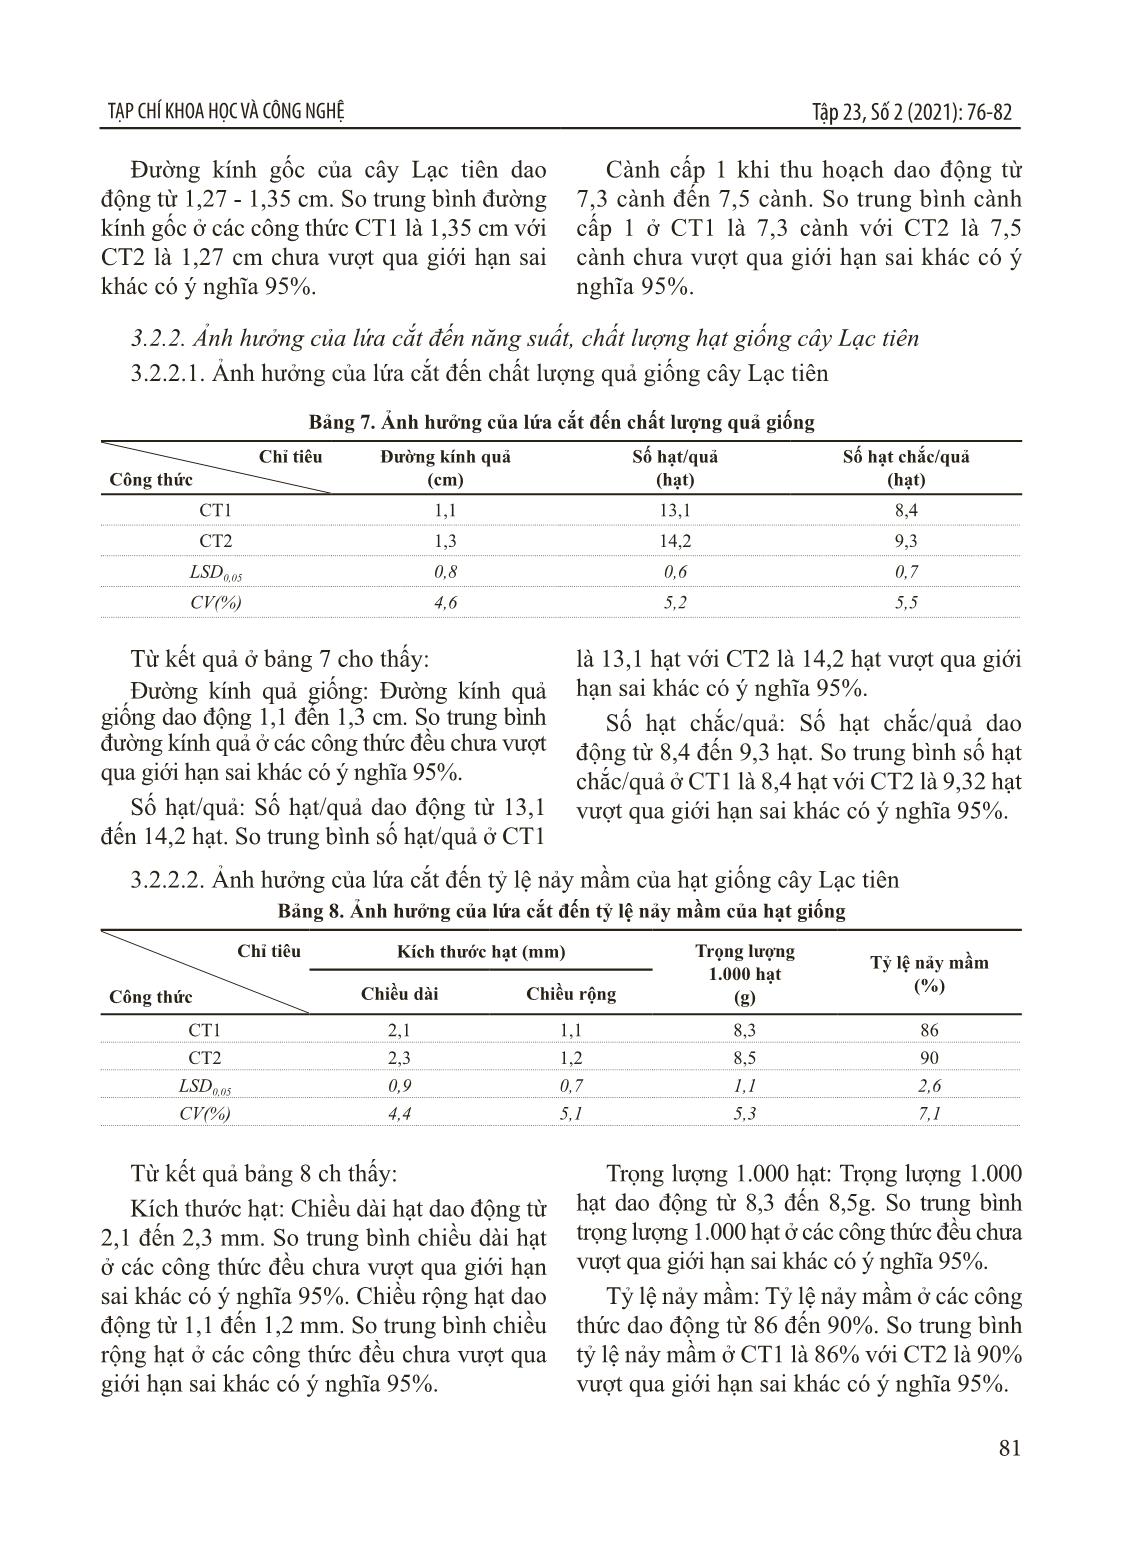 Nghiên cứu xây dựng quy trình sản xuất hạt giống lạc tiên (Passiflora foetida L.) tại Thanh Hóa trang 6